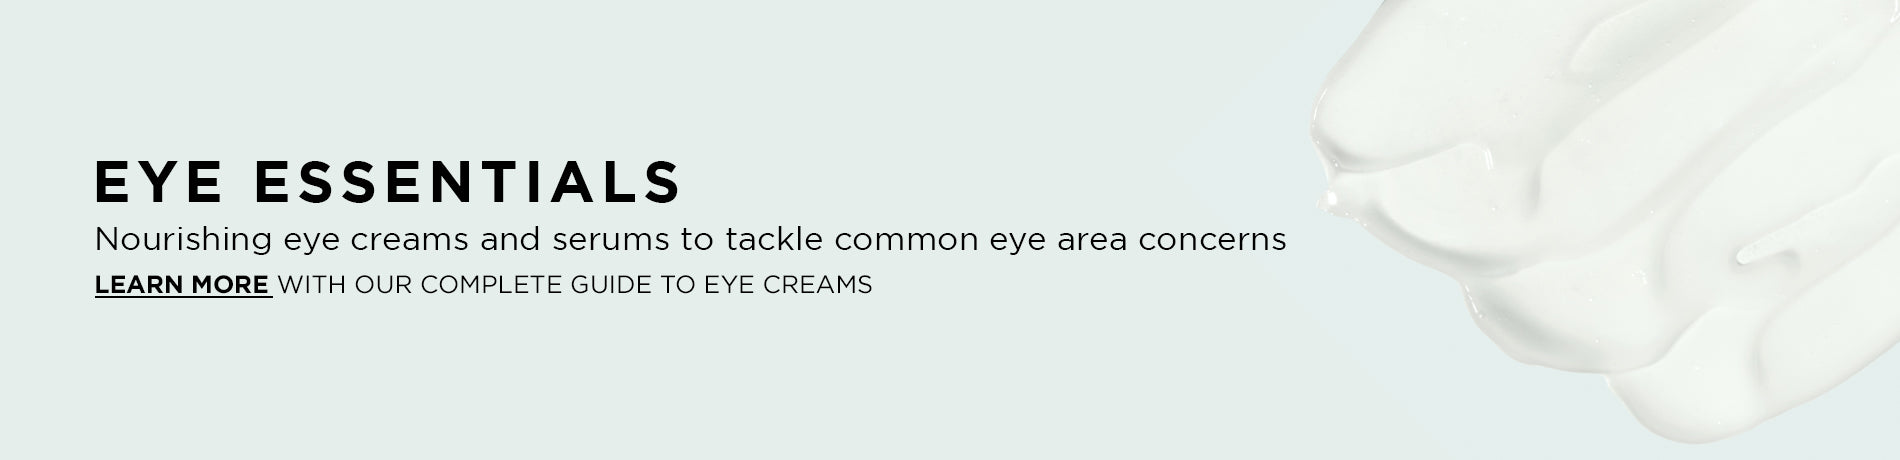 Eye essentials